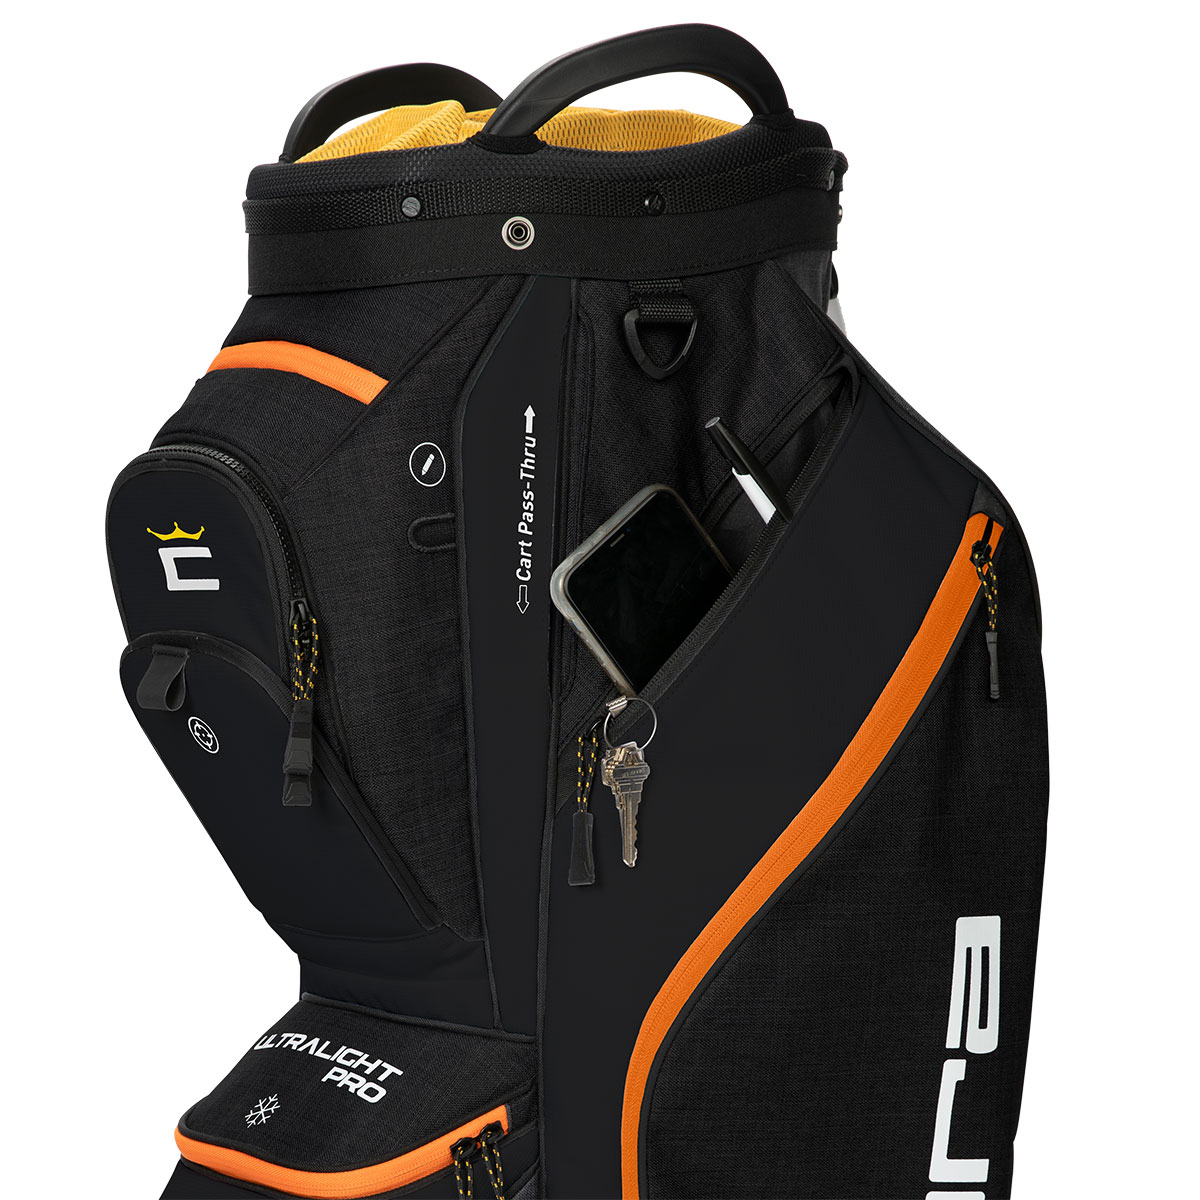 COBRA ULTRALIGHT Pro Lightweight Golf Cart Bag from american golf